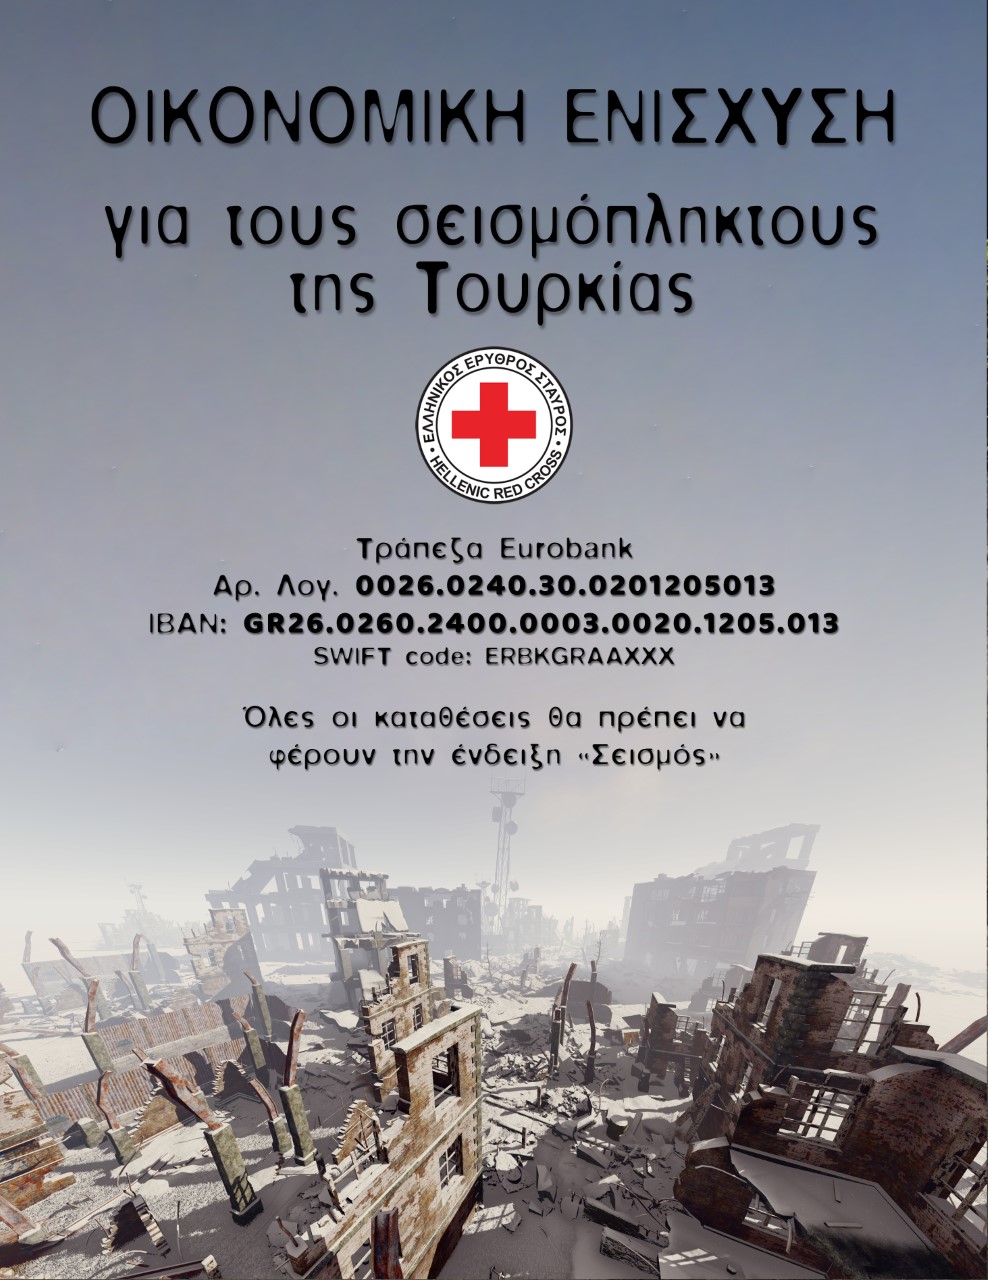 Σεισμός στην Τουρκία: Οικονομική ενίσχυση συγκεντρώνει ο Ελληνικός Ερυθρός Σταυρός